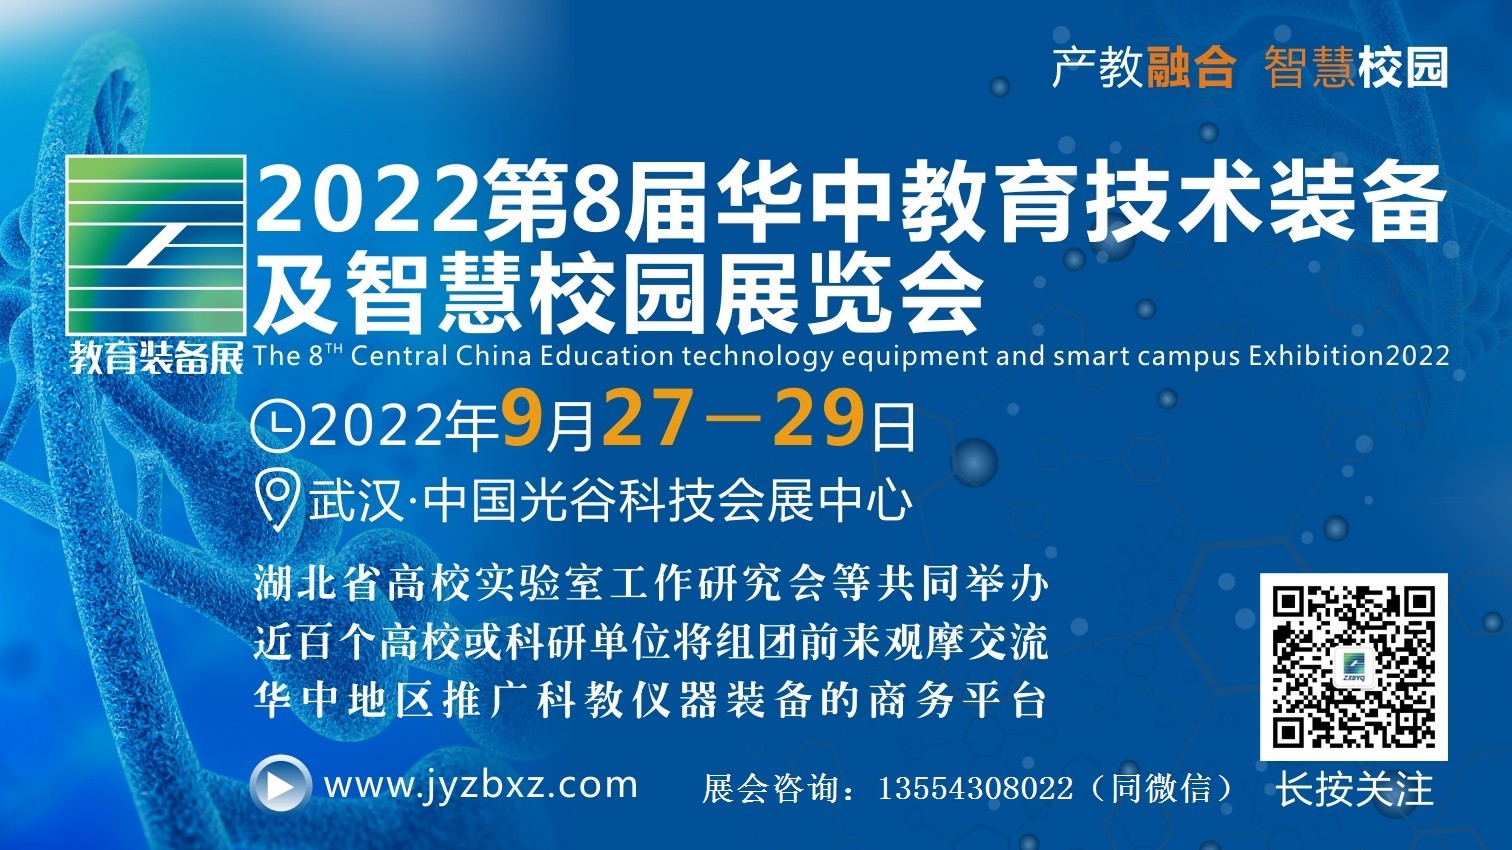 关于举办2022第8届华中教育技术装备及智慧校园展览会通知